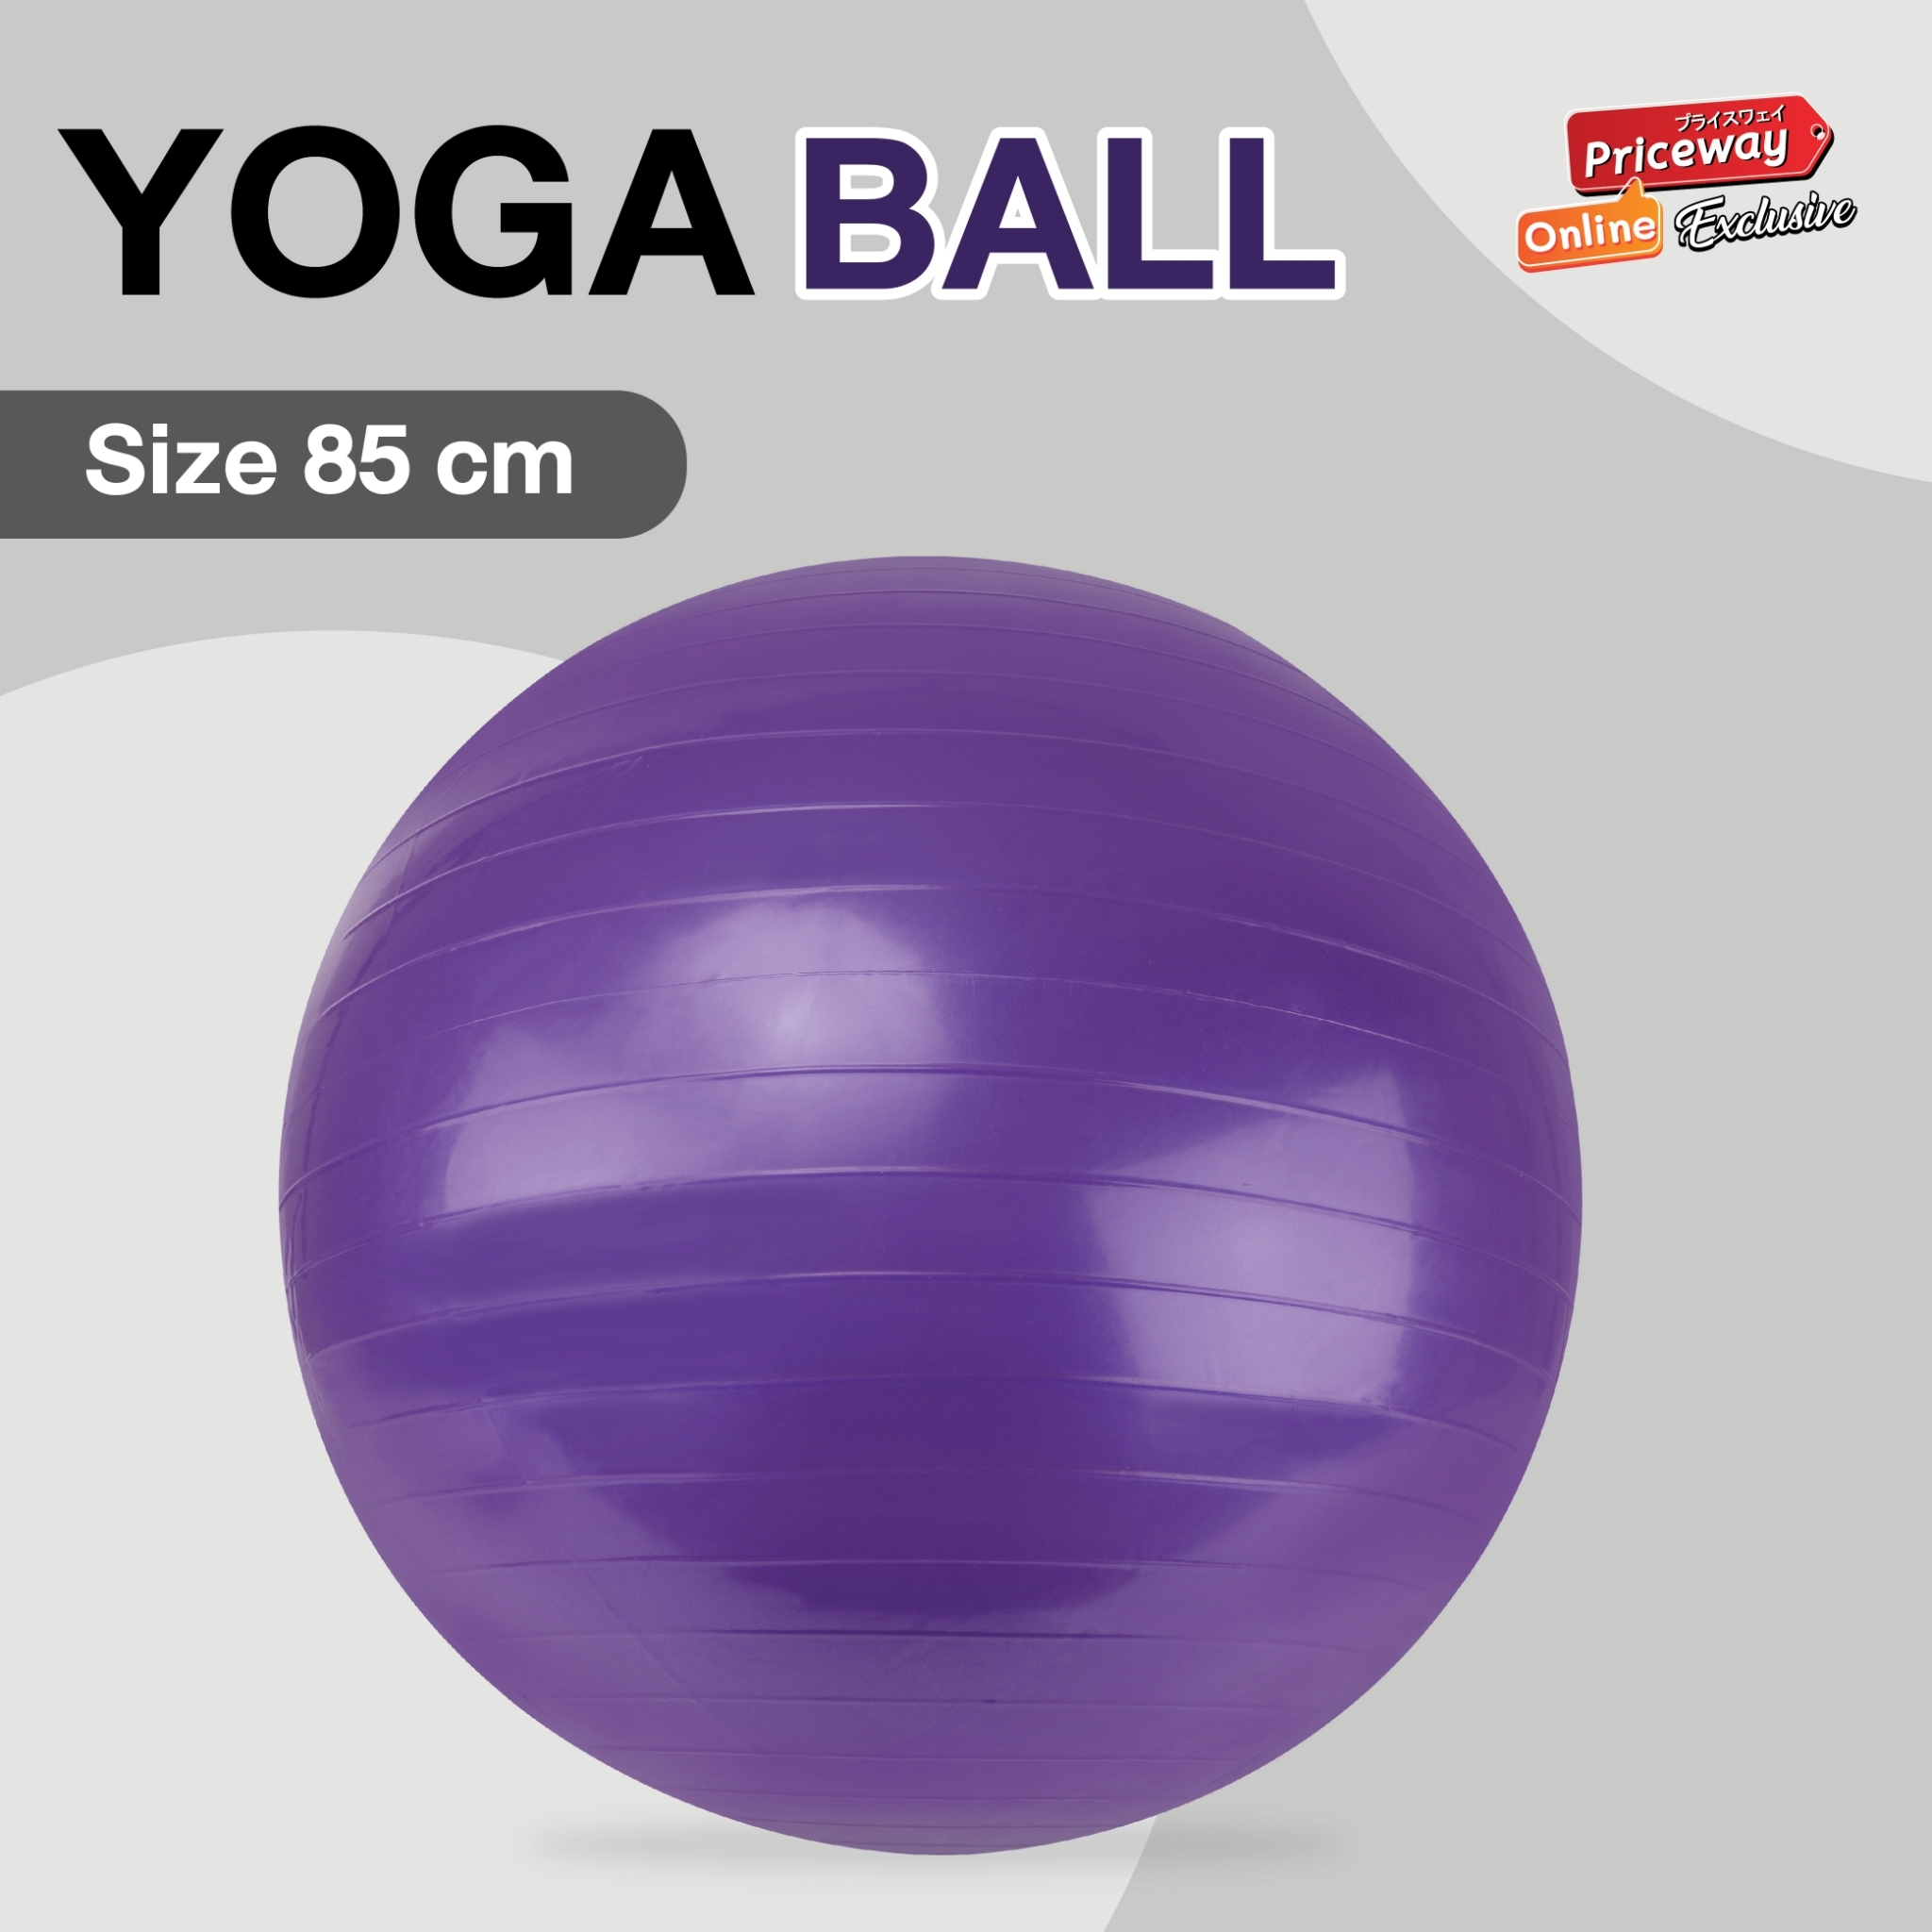 YOGA BALL บอลโยคะ ลูกบอลออกกำลังกาย 85 cm. พร้อมที่ปั๊มลม รุ่น YGB002